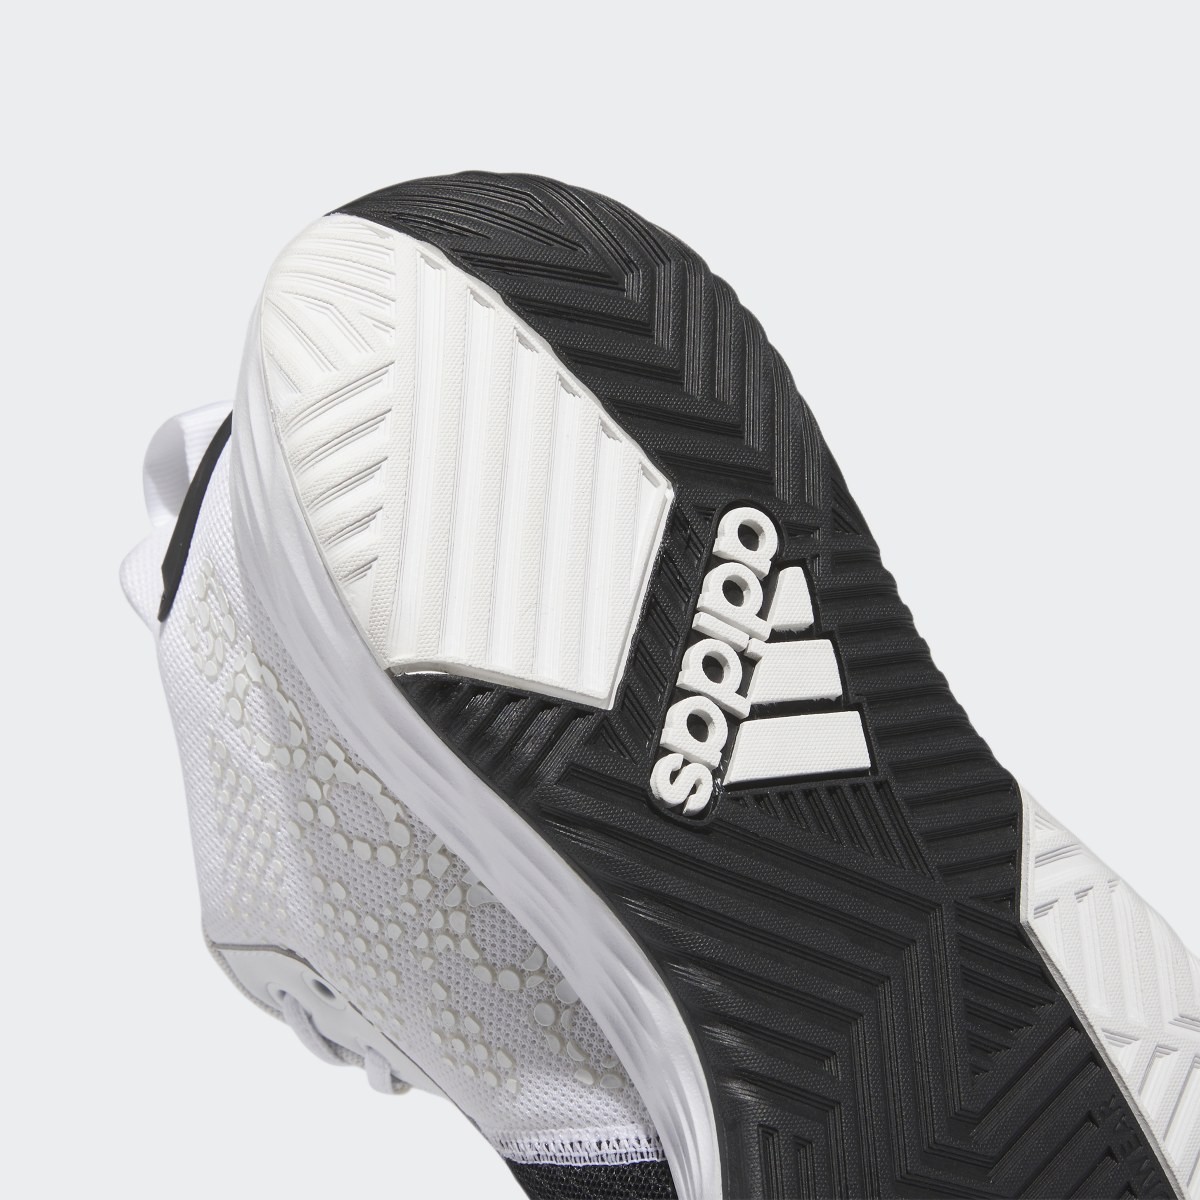 Adidas Ownthegame Ayakkabı. 10